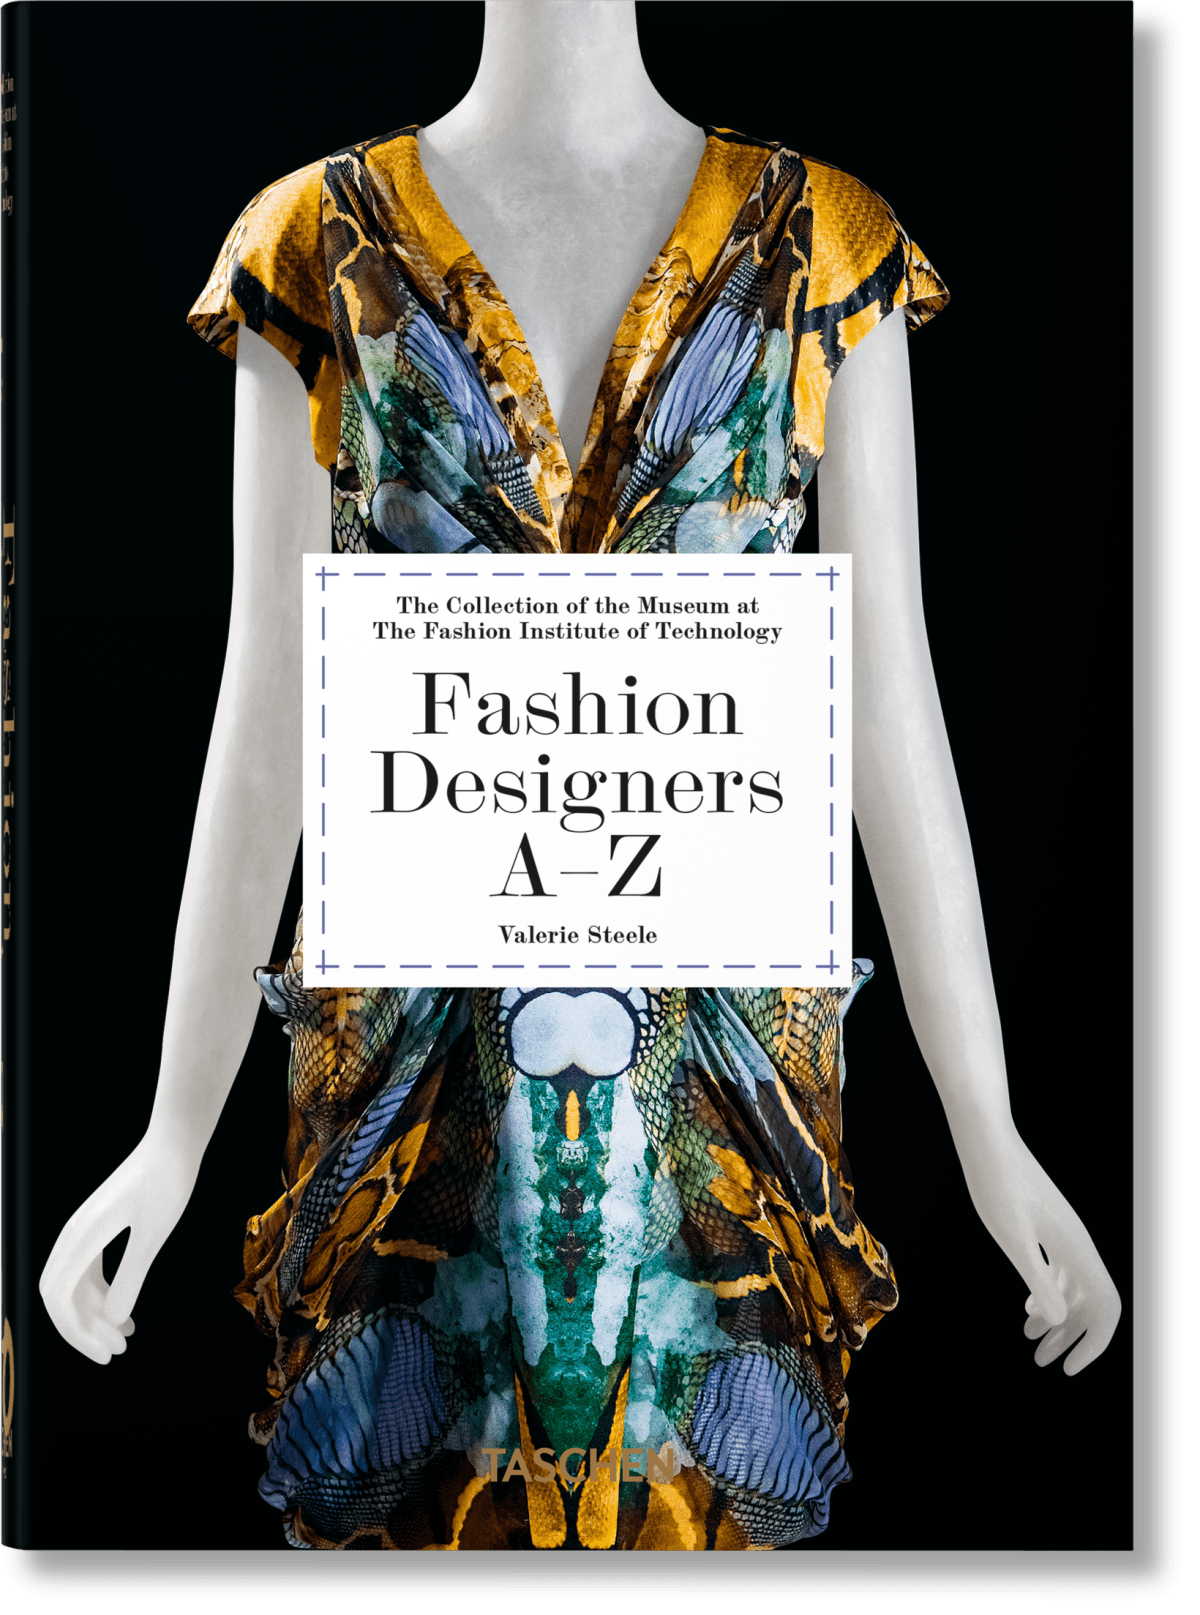 Diseñadores de moda A-Z